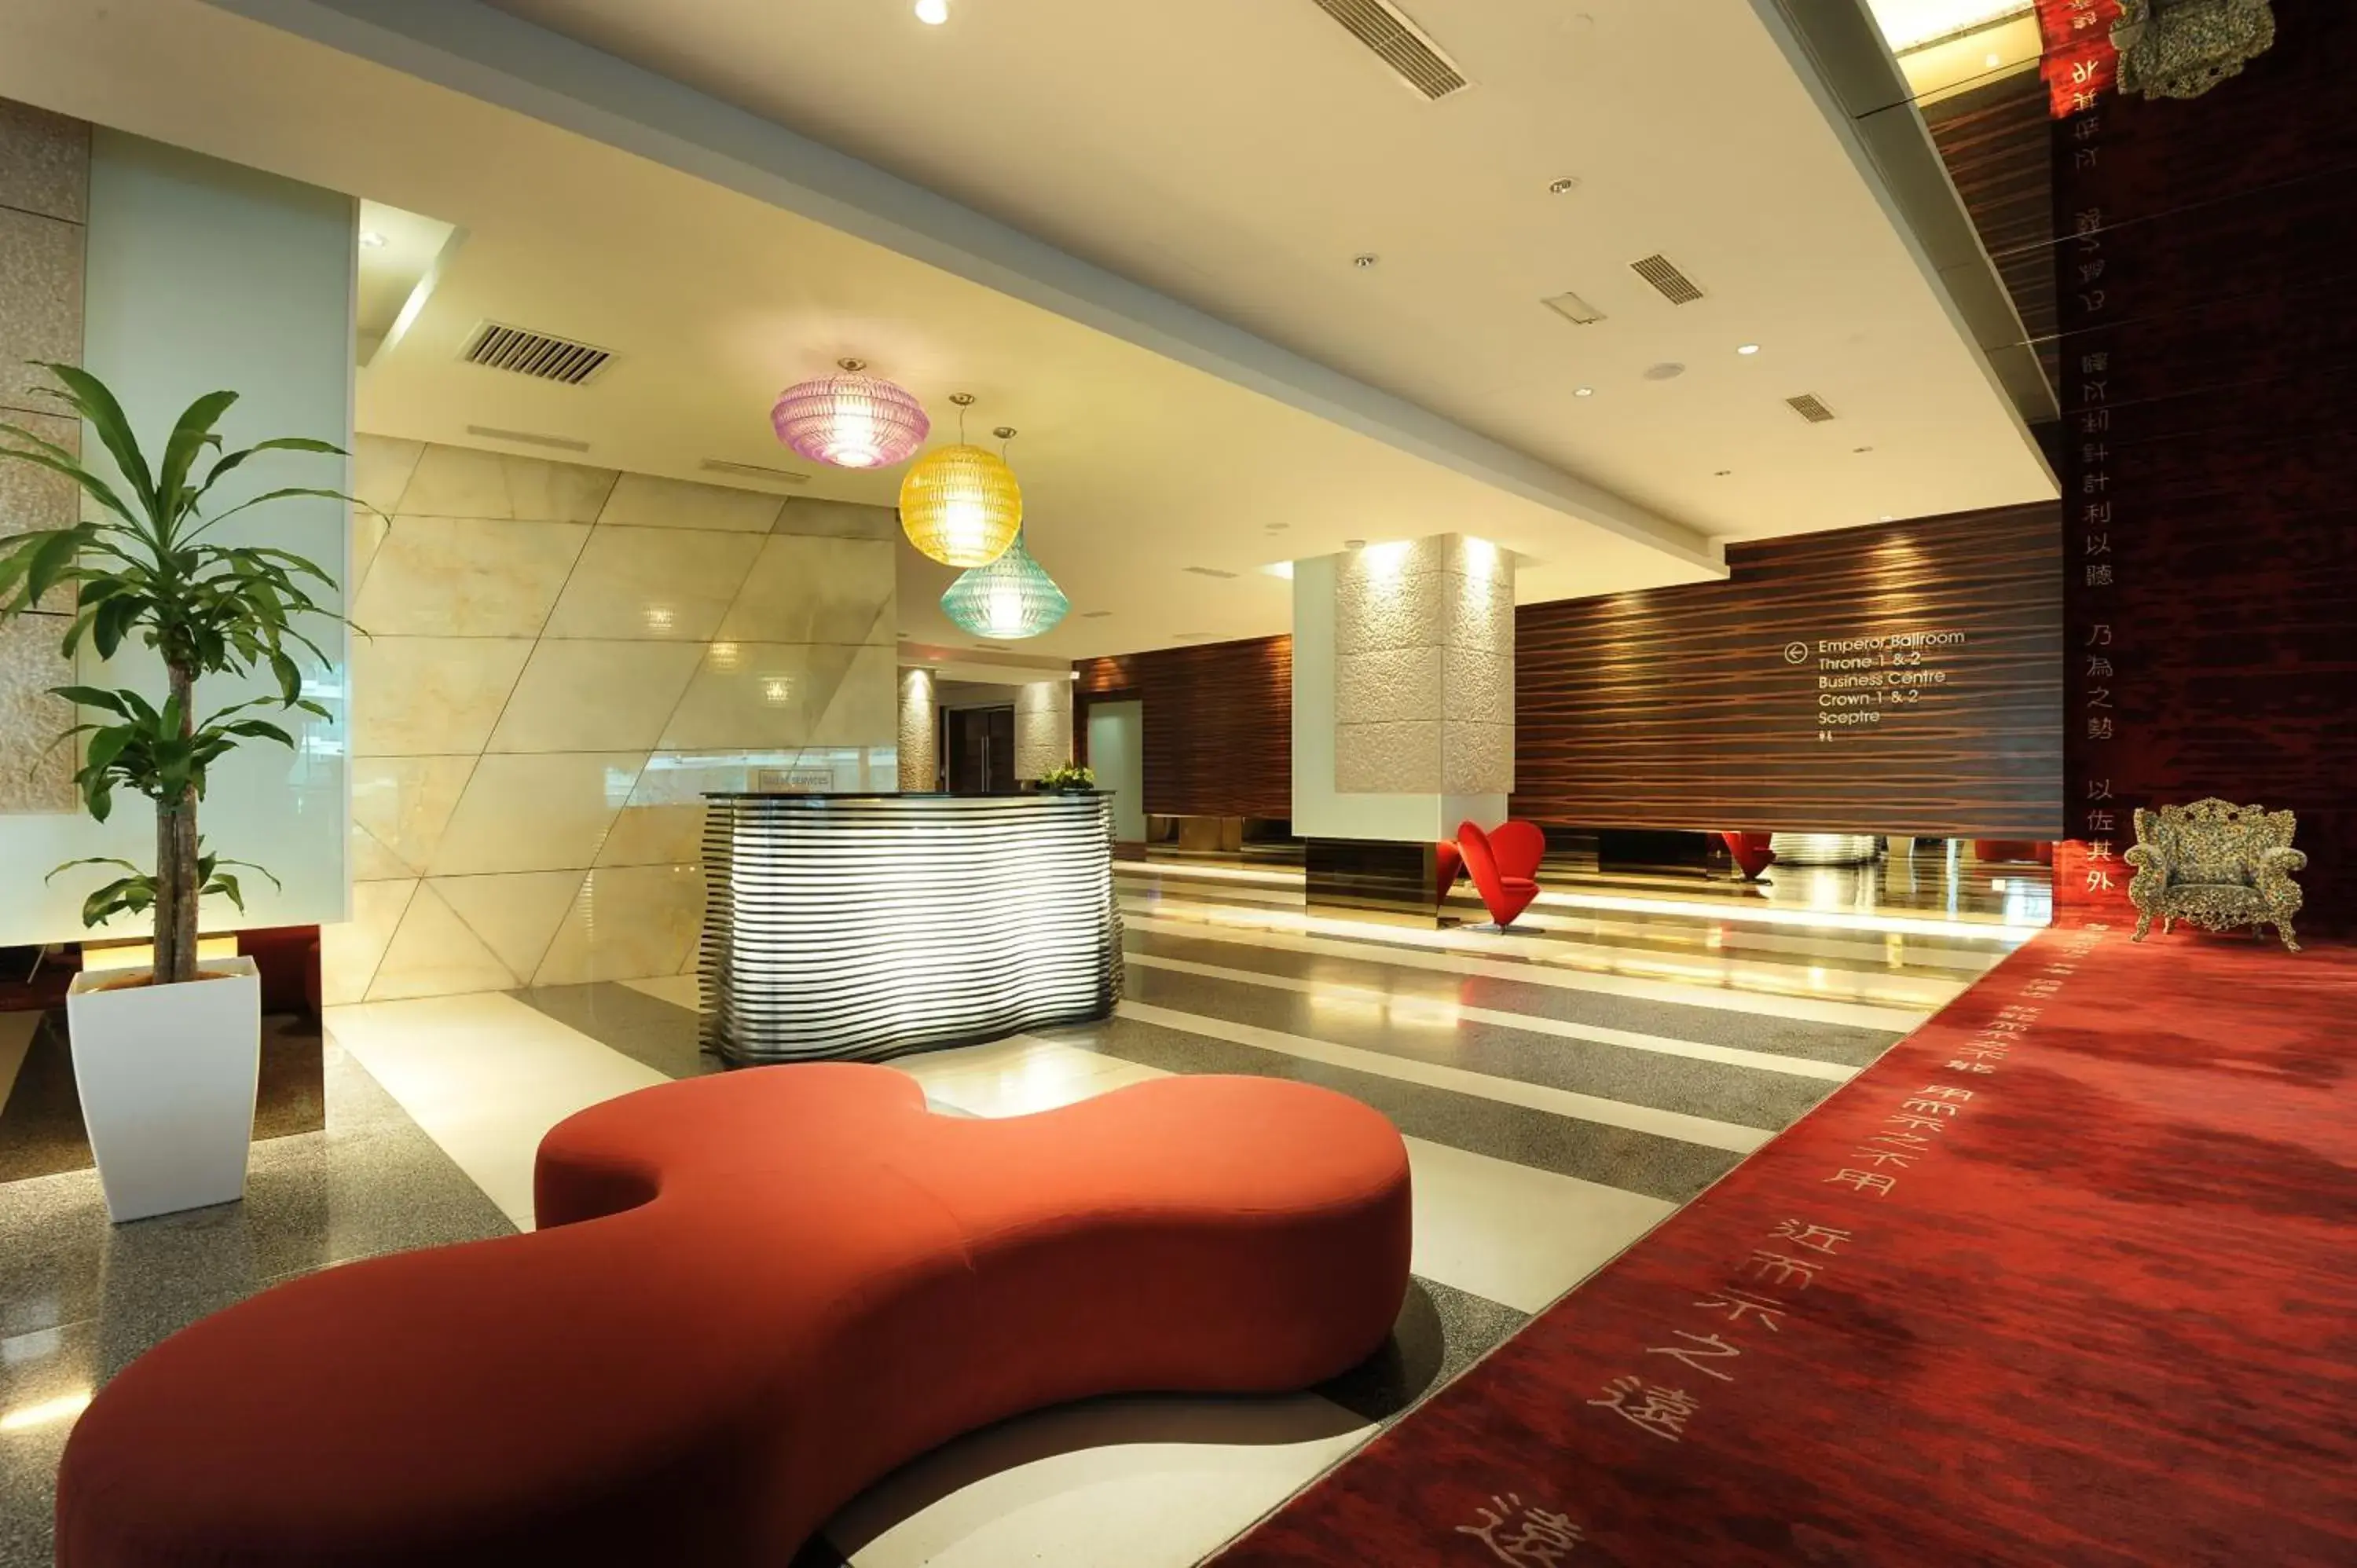 Lobby or reception, Lobby/Reception in Empire Hotel Subang